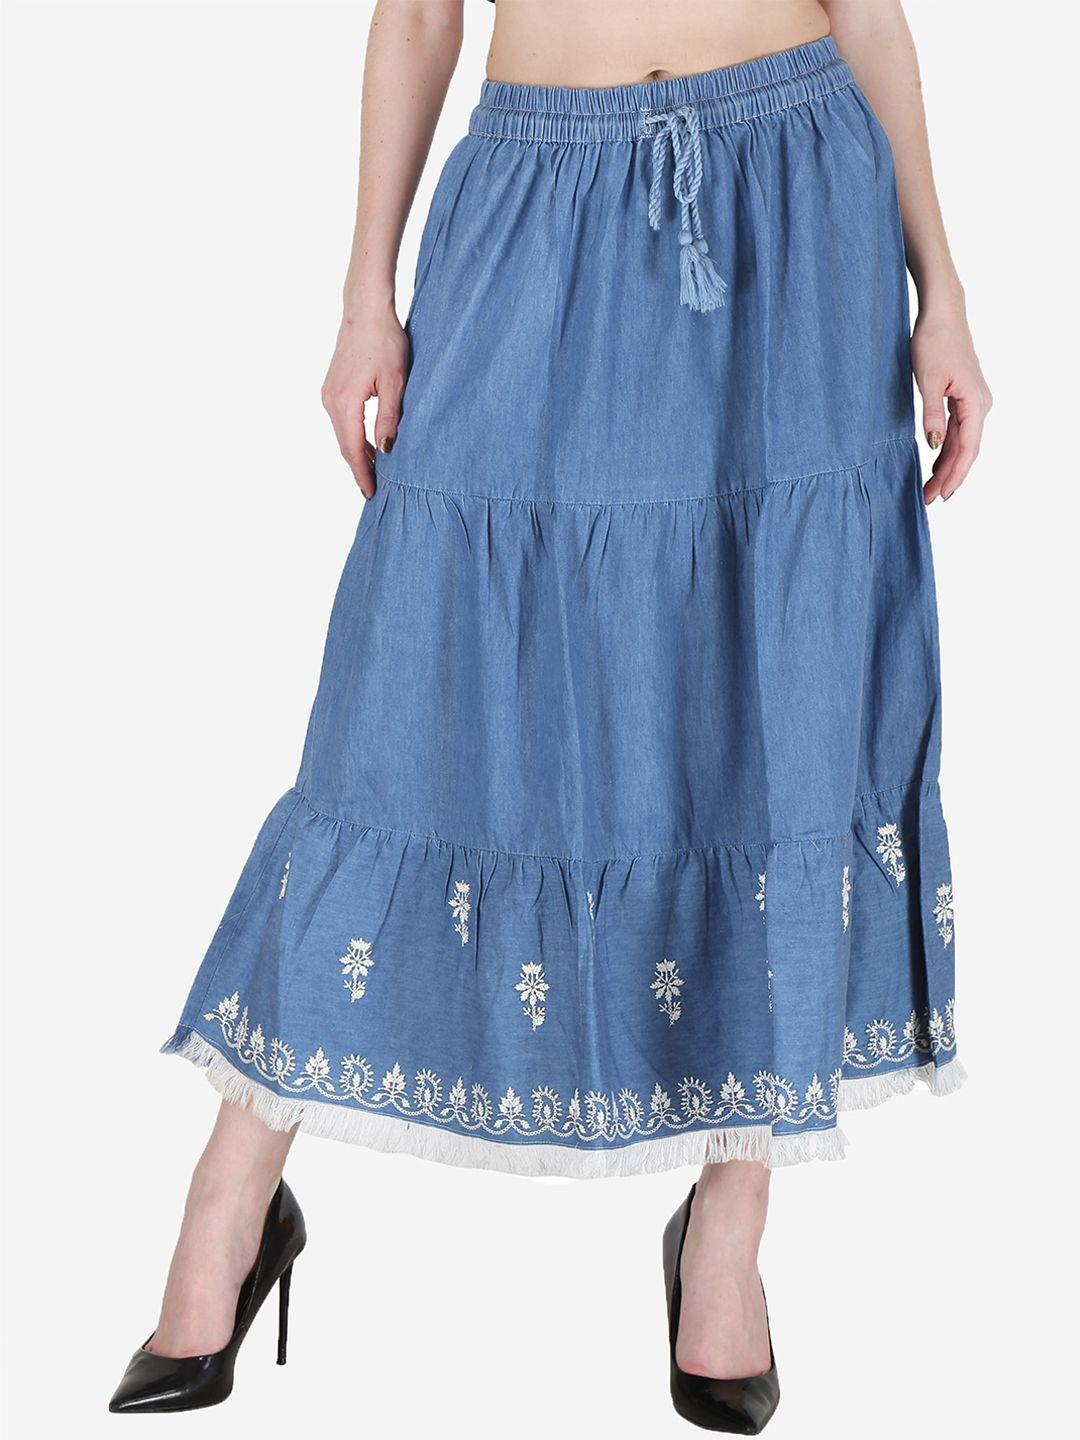 sumavi-fashion border embroidered flared midi denim skirt